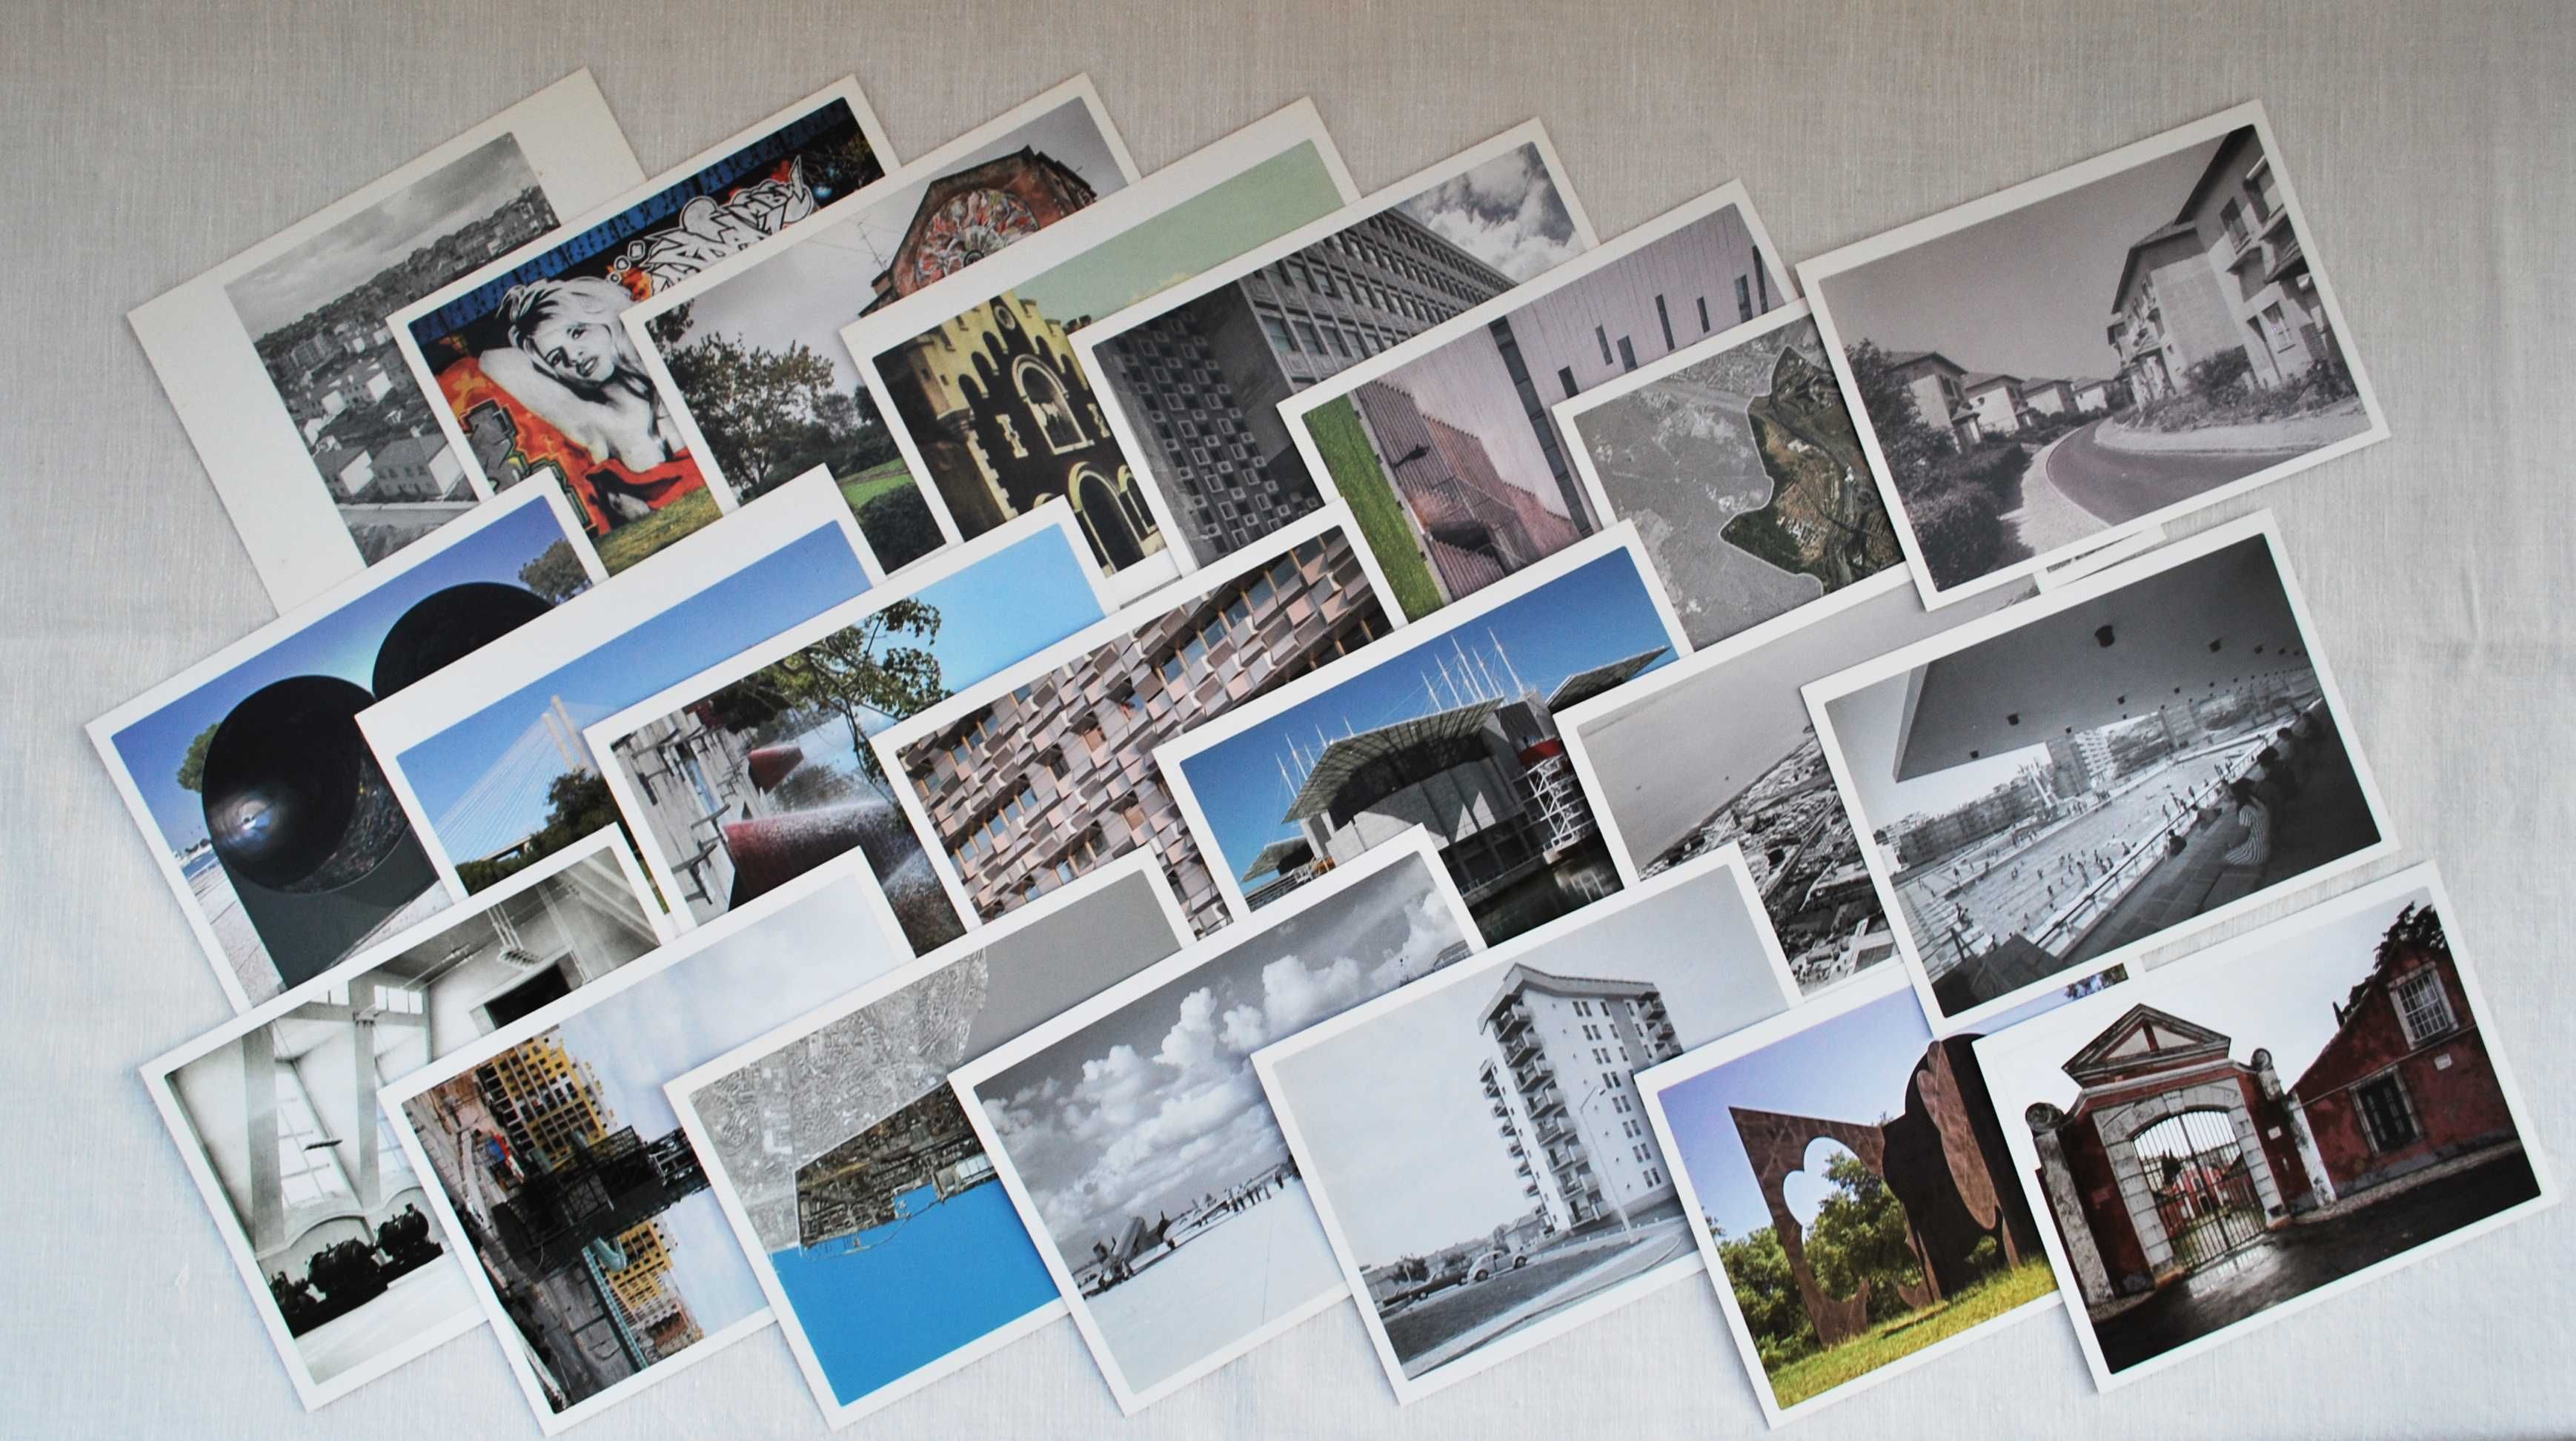 207 postais da Exposição Freguesias de Lisboa passado e futuro